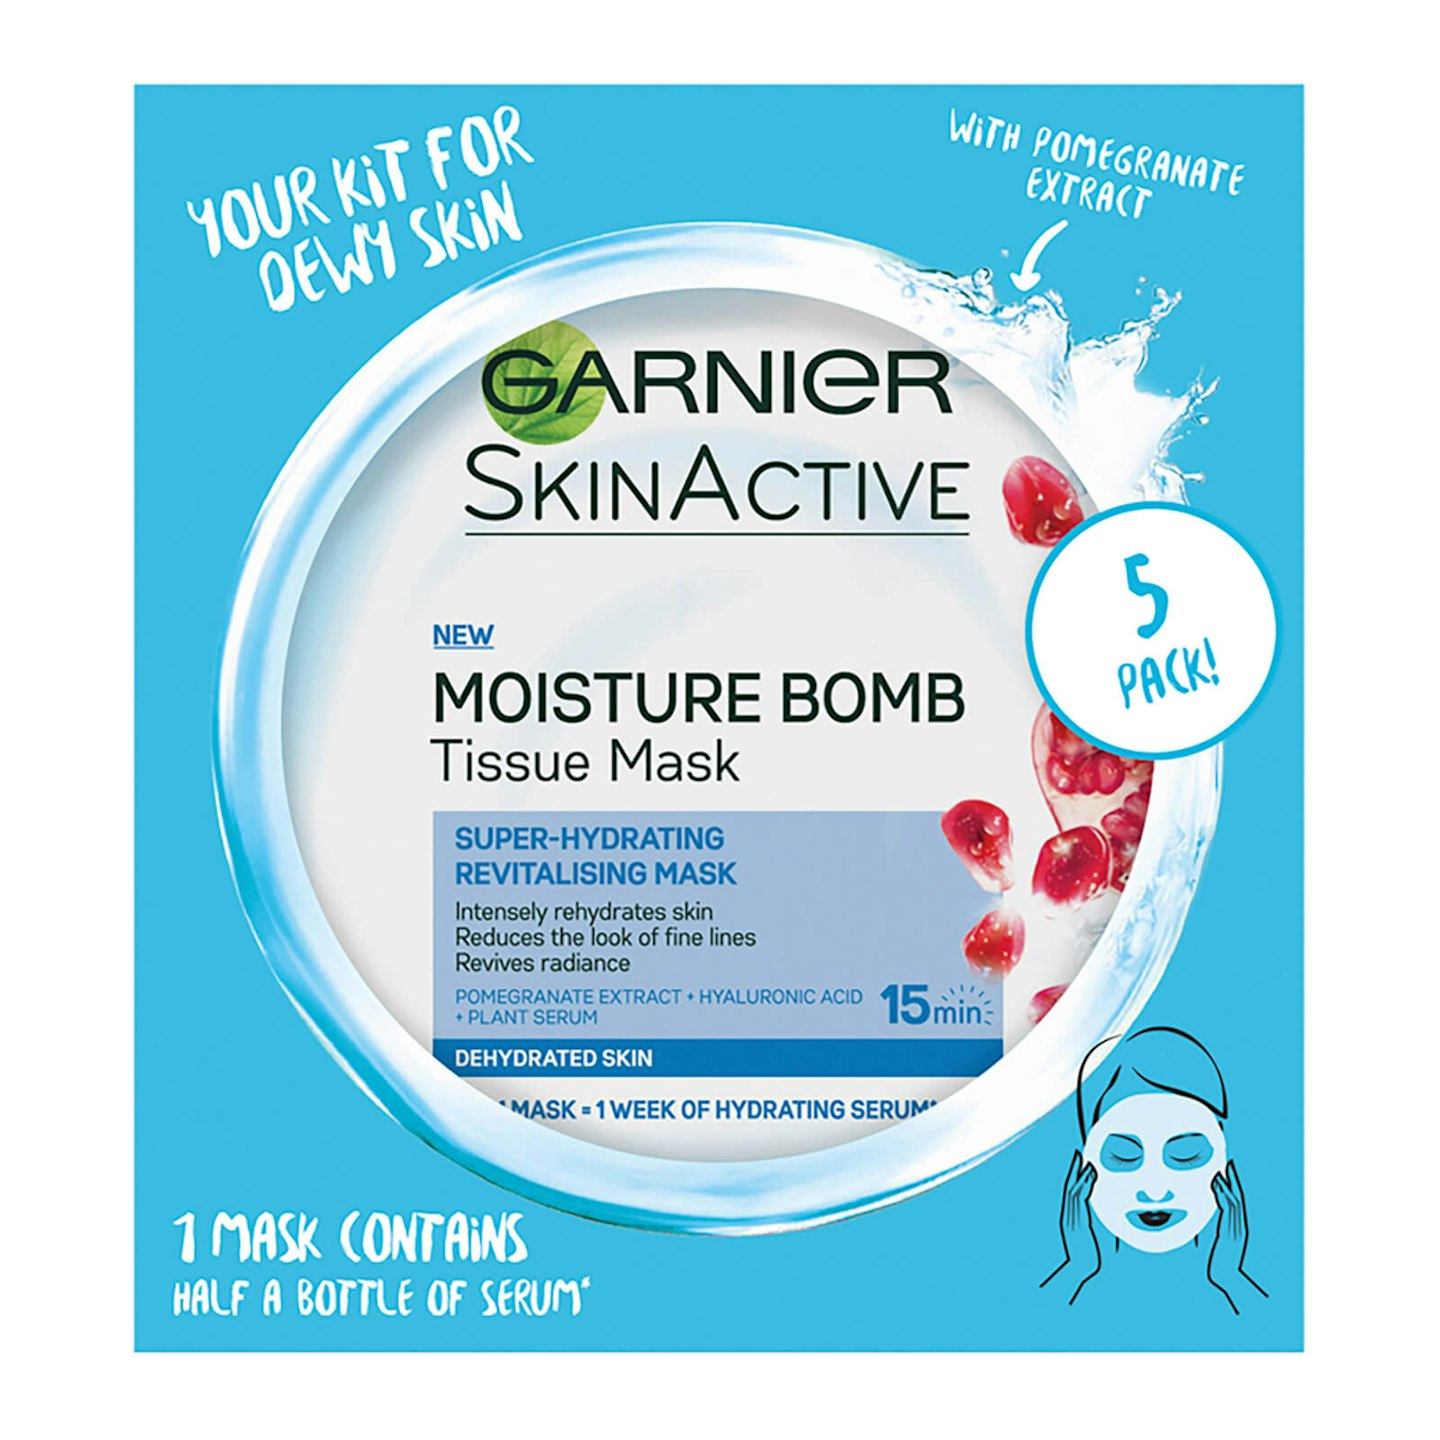 Garnier's SkinActive Moisture Bomb Tissue Mask, £13.99 for 5